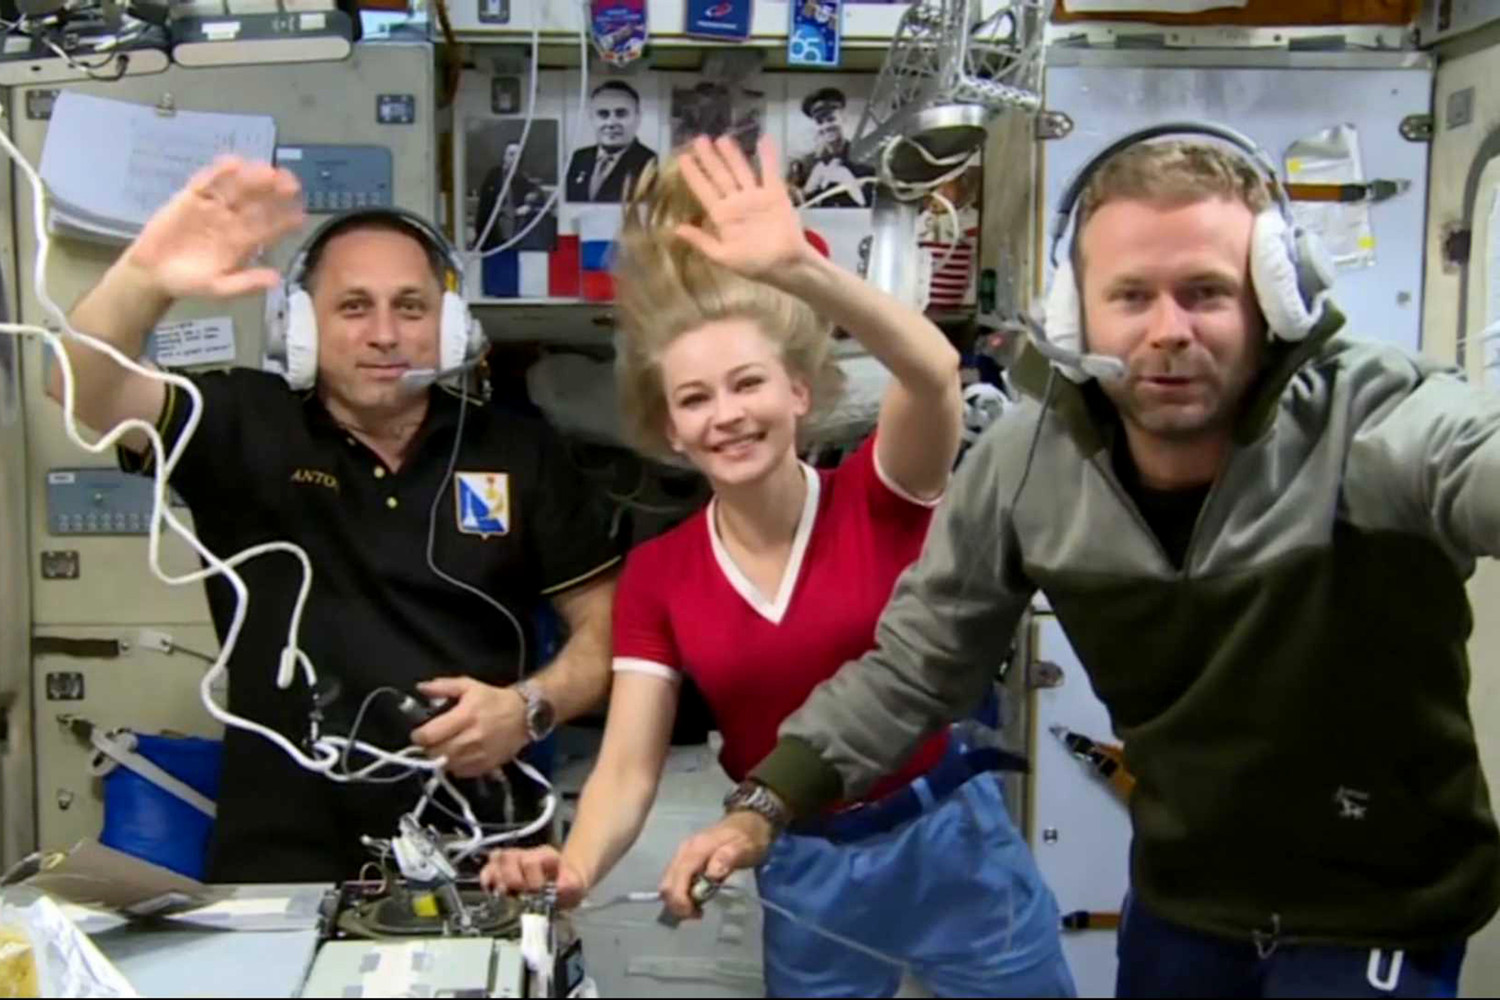 актриса в космосе для съемок фото